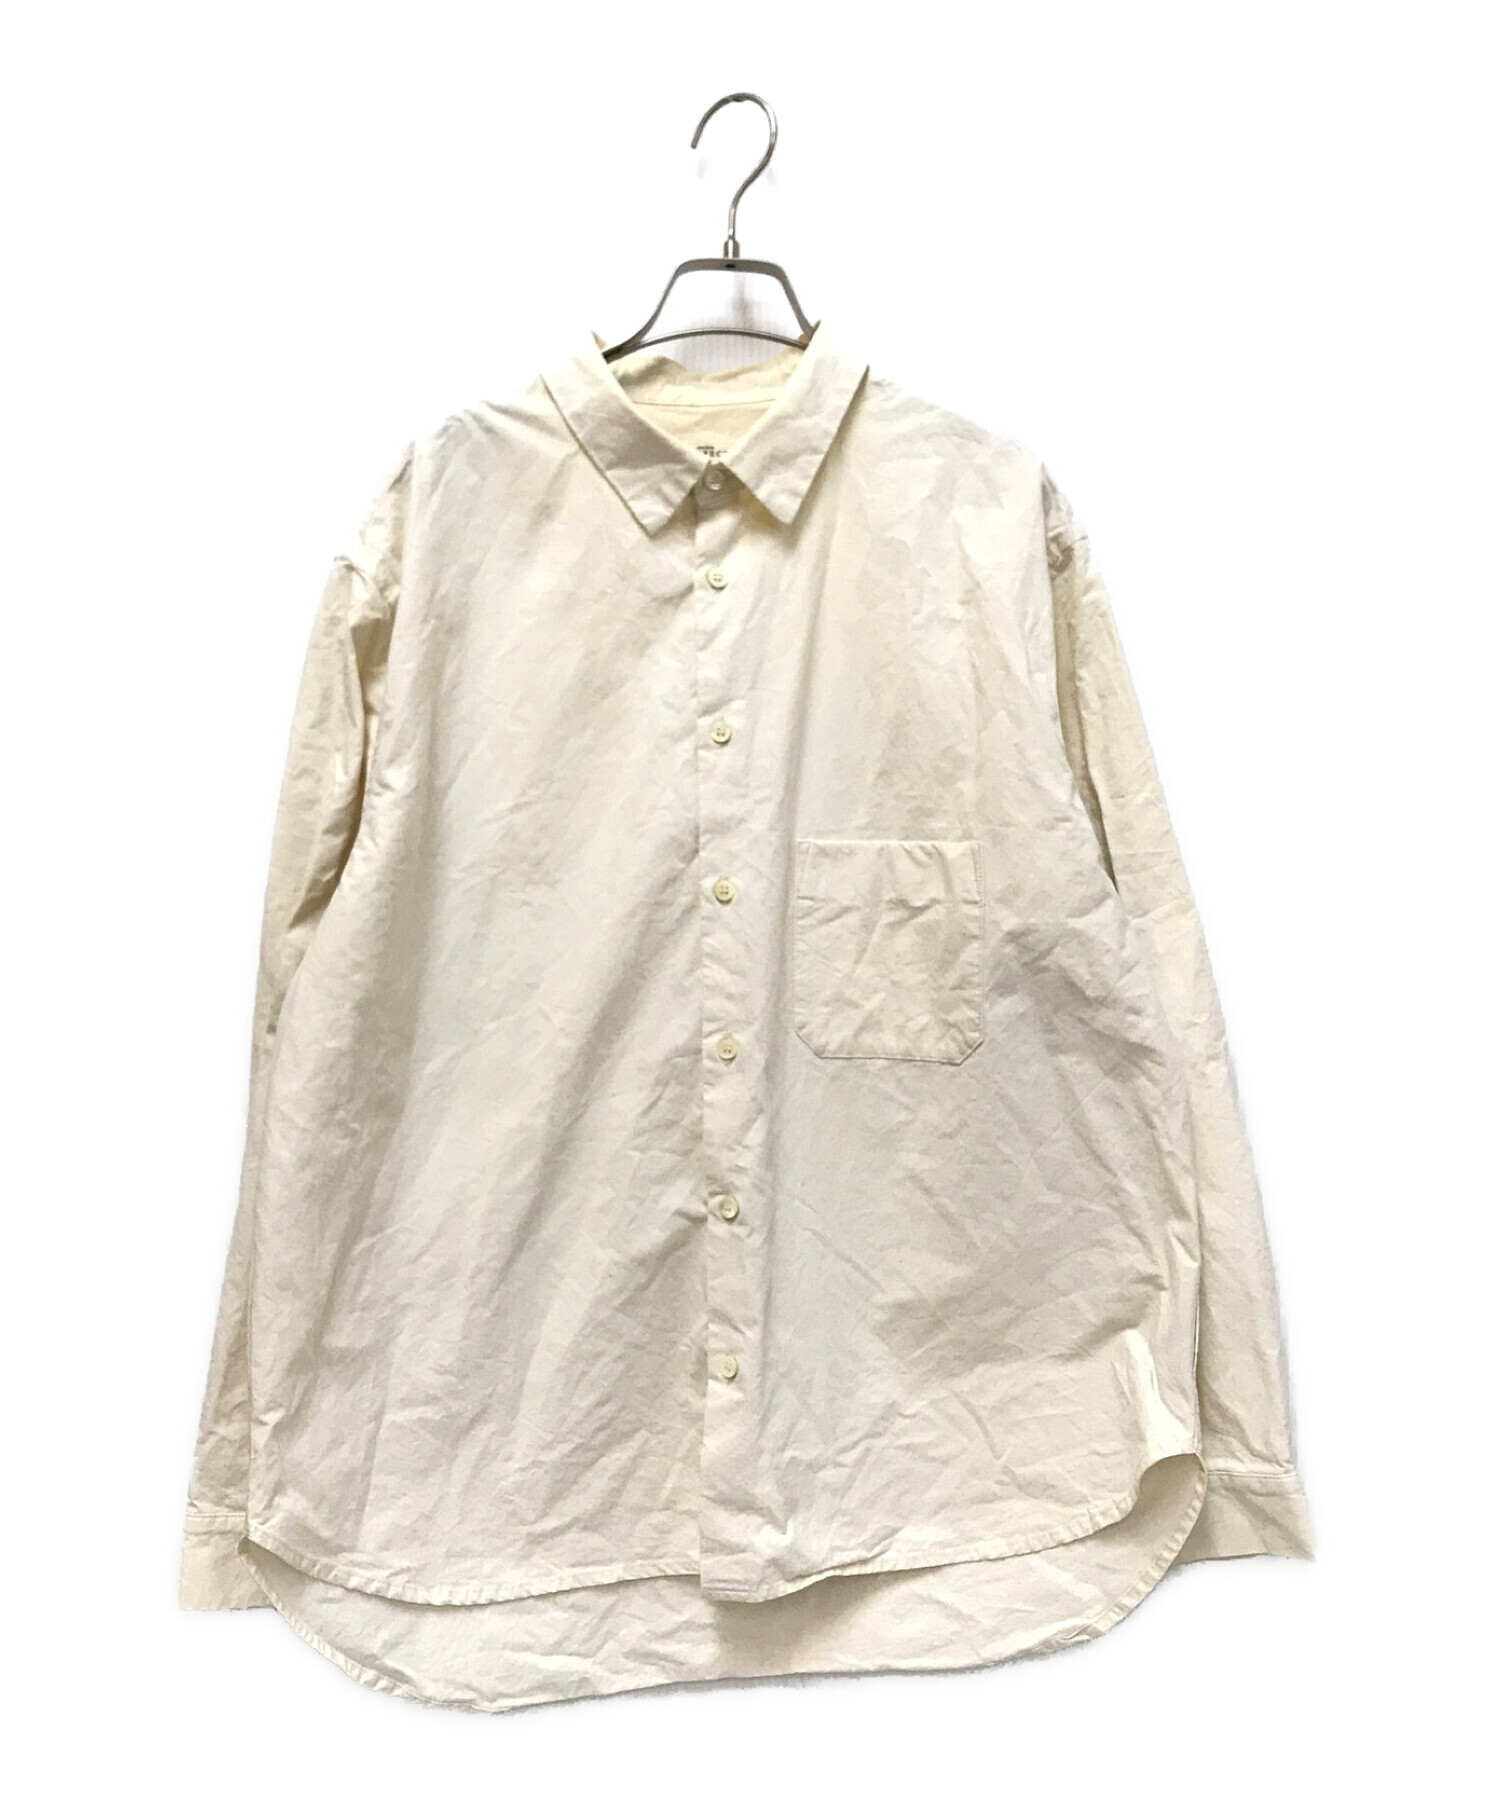 nestrobe confect (ネストローブ コンフェクト) 馬布レギュラーカラーシャツ アイボリー サイズ:4